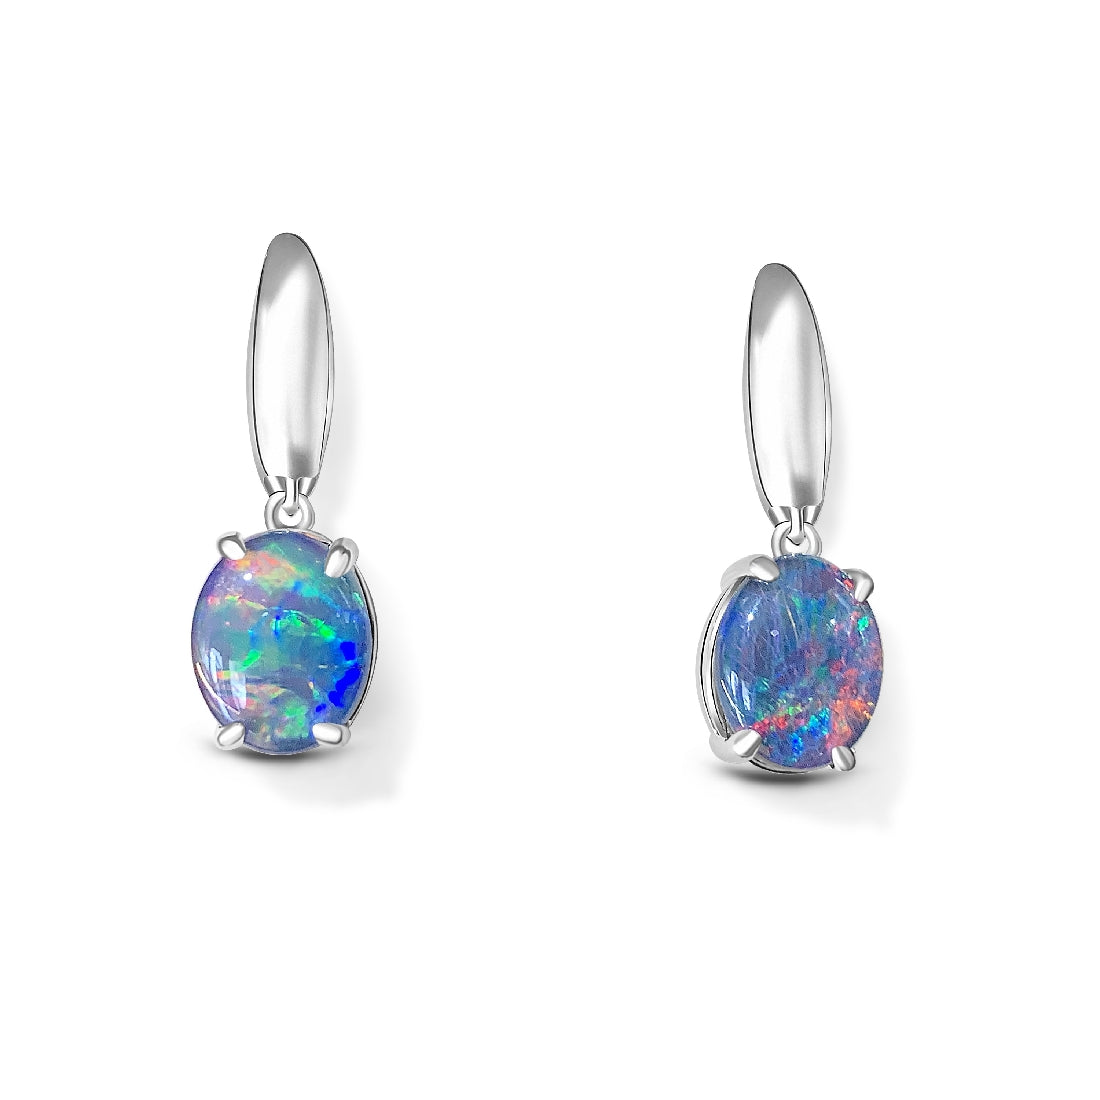 Sterling Silver 10x8mm Oval Opal triplets dangling earrings - Masterpiece Jewellery Opal & Gems Sydney Australia | Online Shop